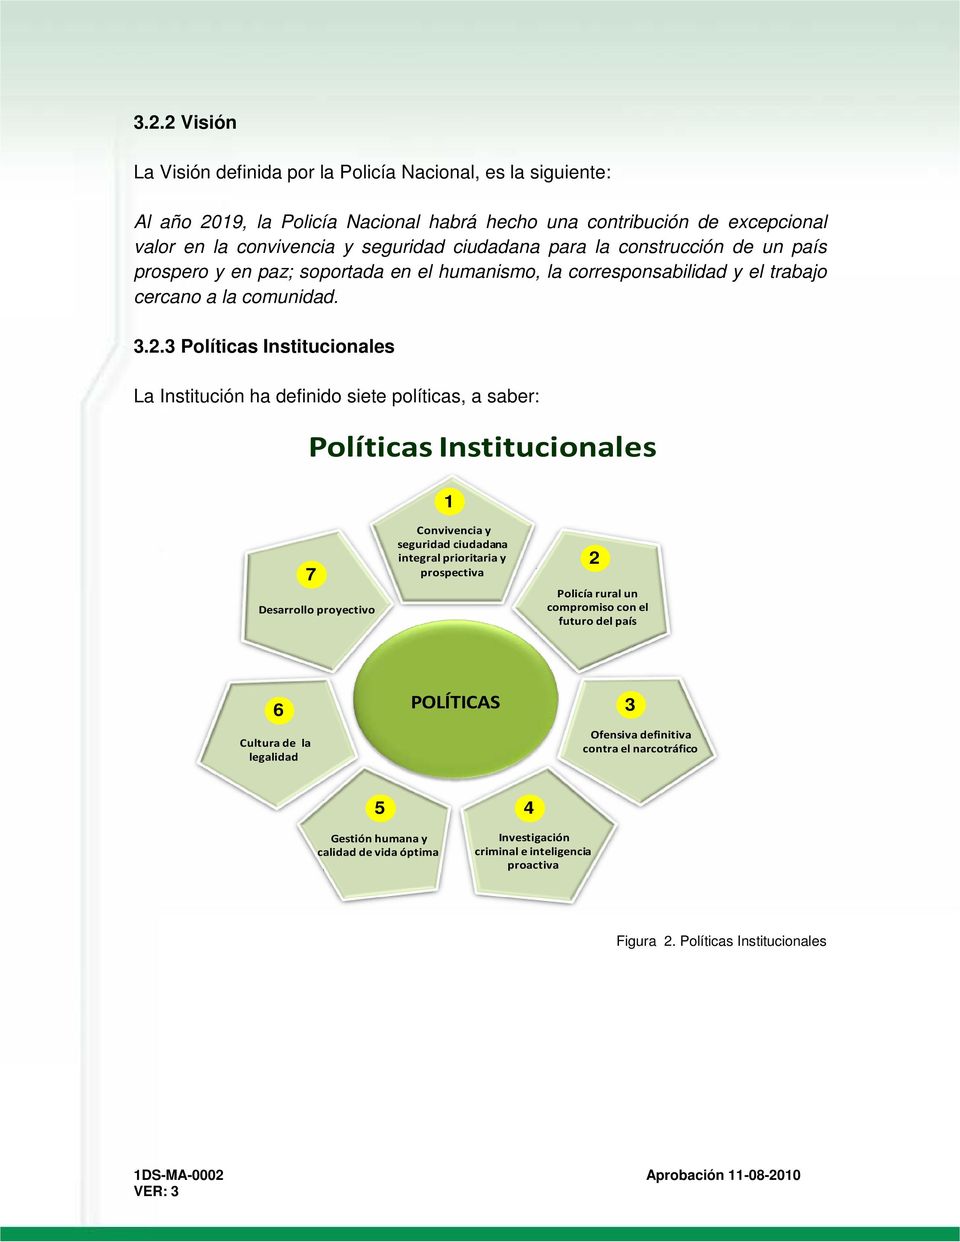 3 Políticas Institucionales La Institución ha definido siete políticas, a saber: Políticas Institucionales 1 7 Desarrollo proyectivo Convivencia y seguridad ciudadana integral prioritaria y